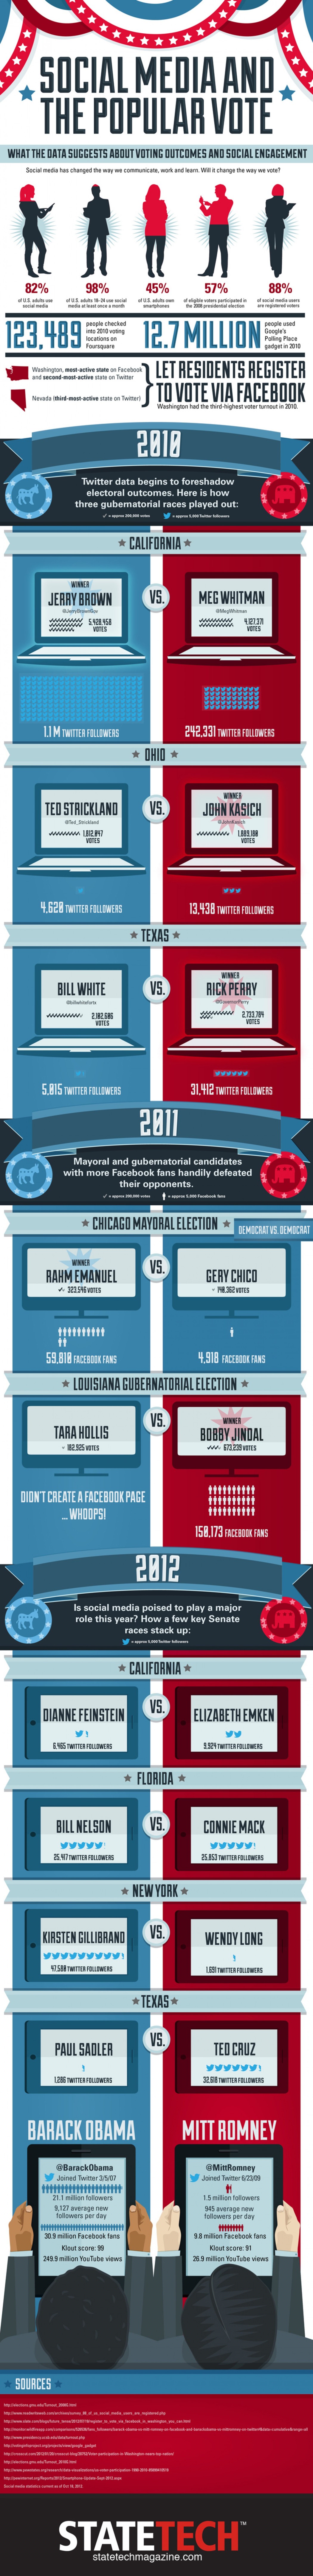 Can Social media predict the election outcome?